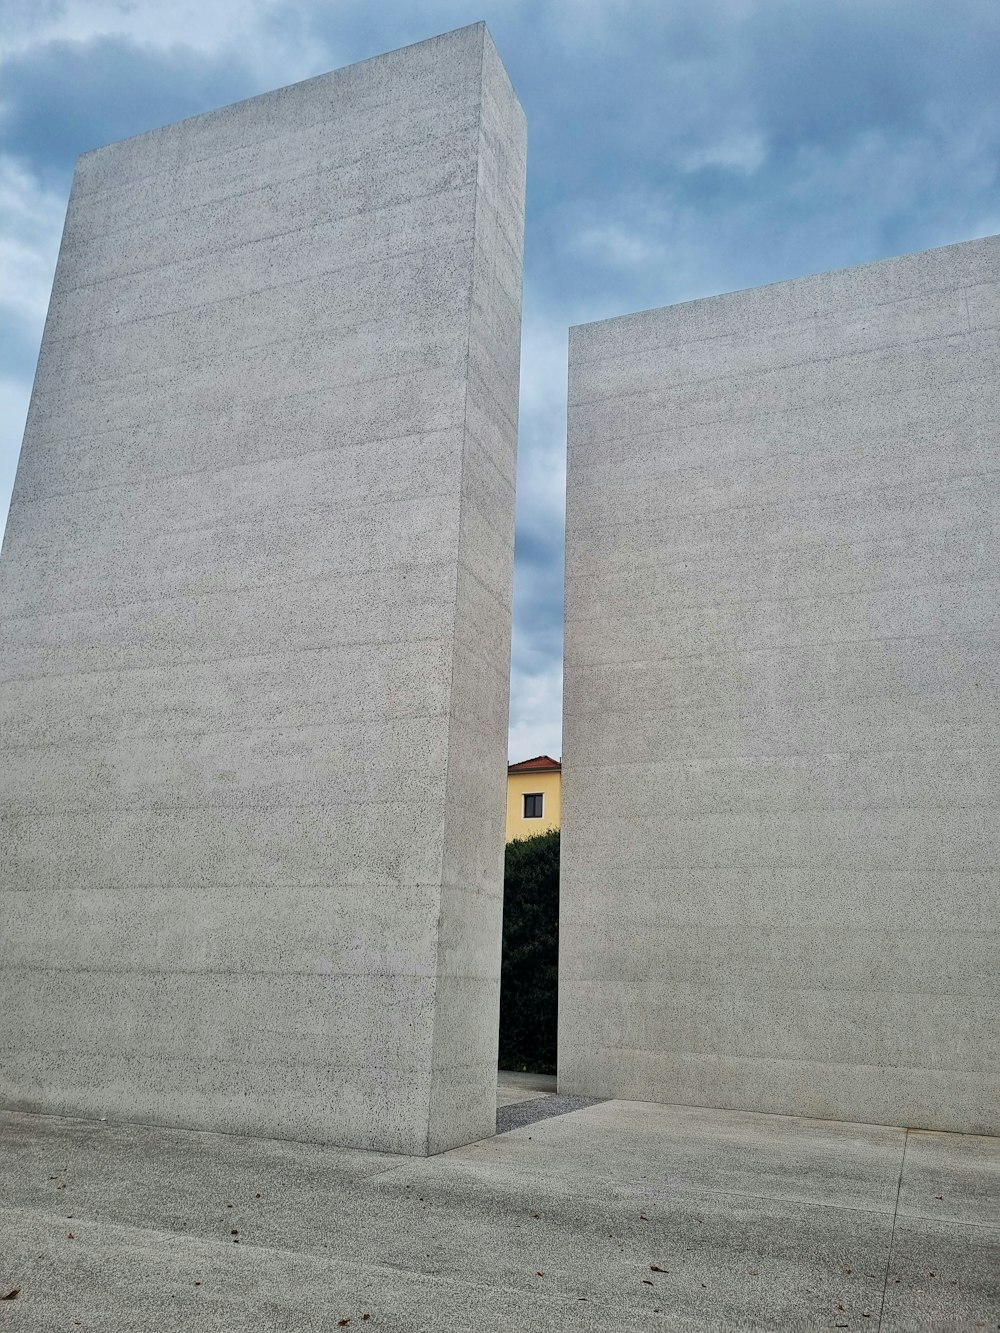 a large concrete structure